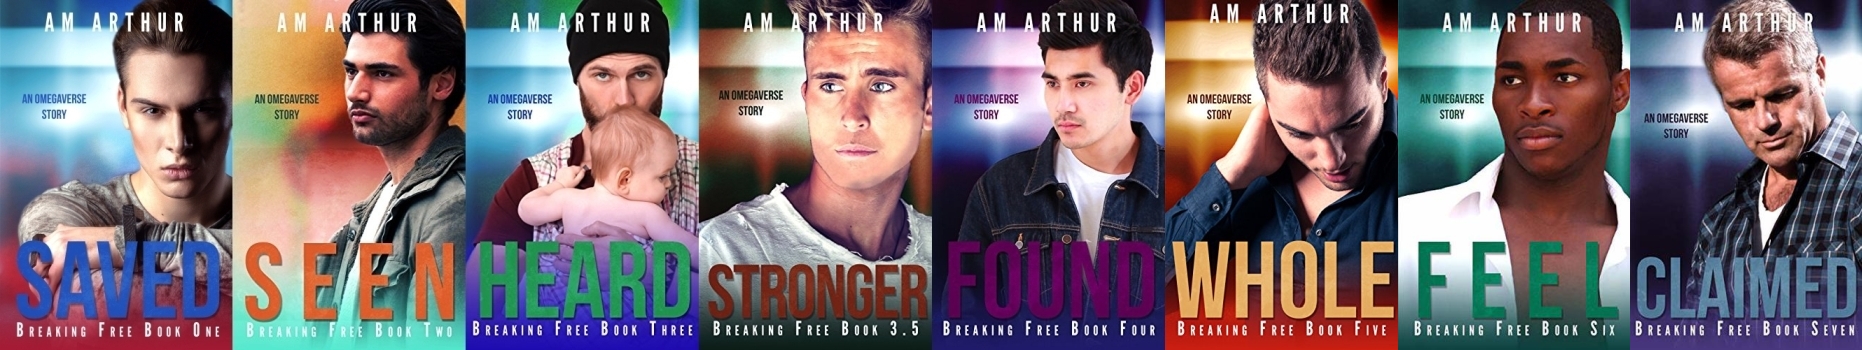 Breaking Free by A.M. Arthur